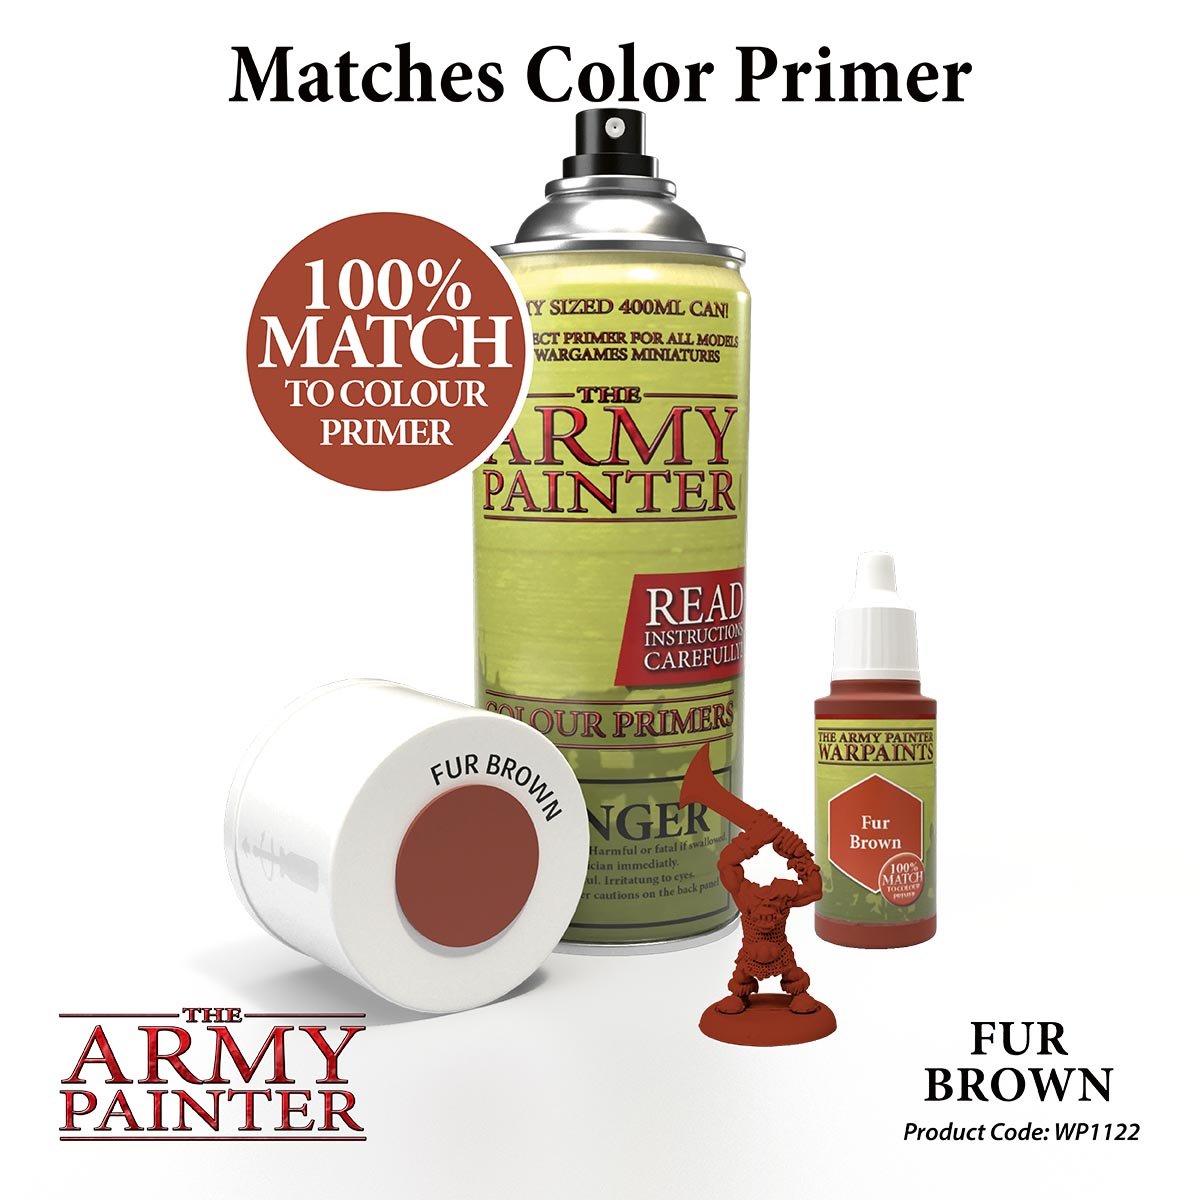 The Army Painter Warpaints WP1122 Fur Brown Acrylic Paint 18ml bottle